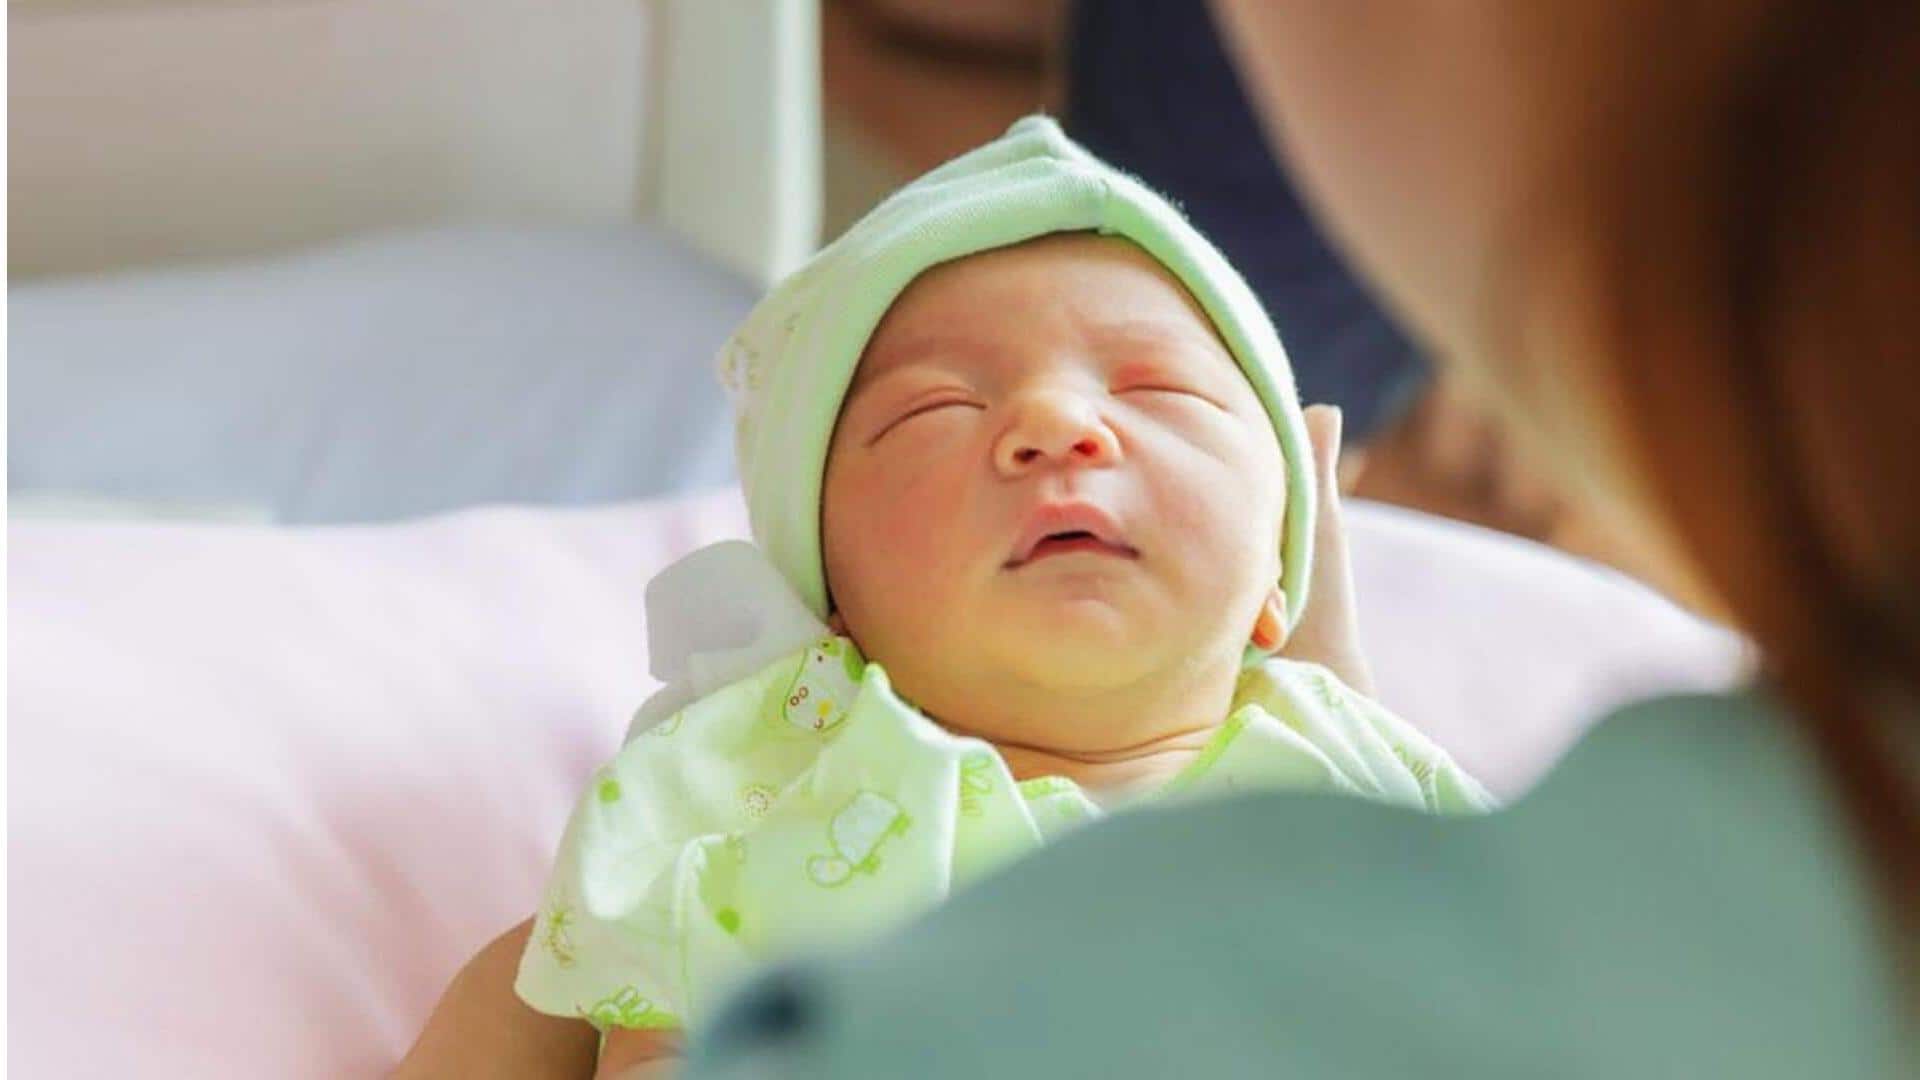 Korea Selatan menawarkan 1.1 milyar untuk karyawan yang memiliki bayi